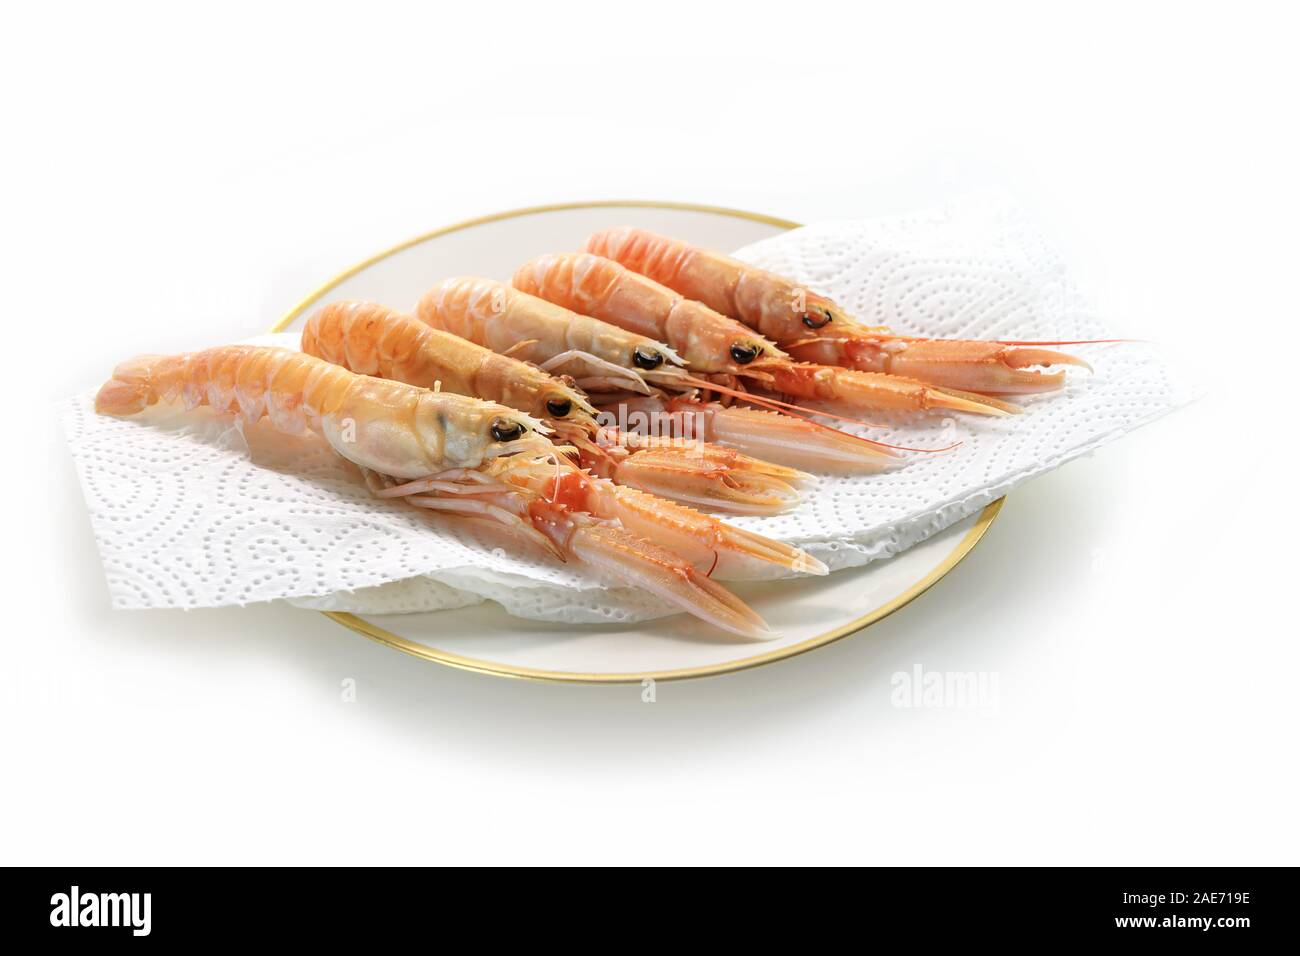 Mehrere frische Scampi auch genannt Kaisergranat oder Langustinen für Vorbereitung, teure Meeresfrüchte auf ein Papiertuch auf einer Platte, weißer Hintergrund Stockfoto